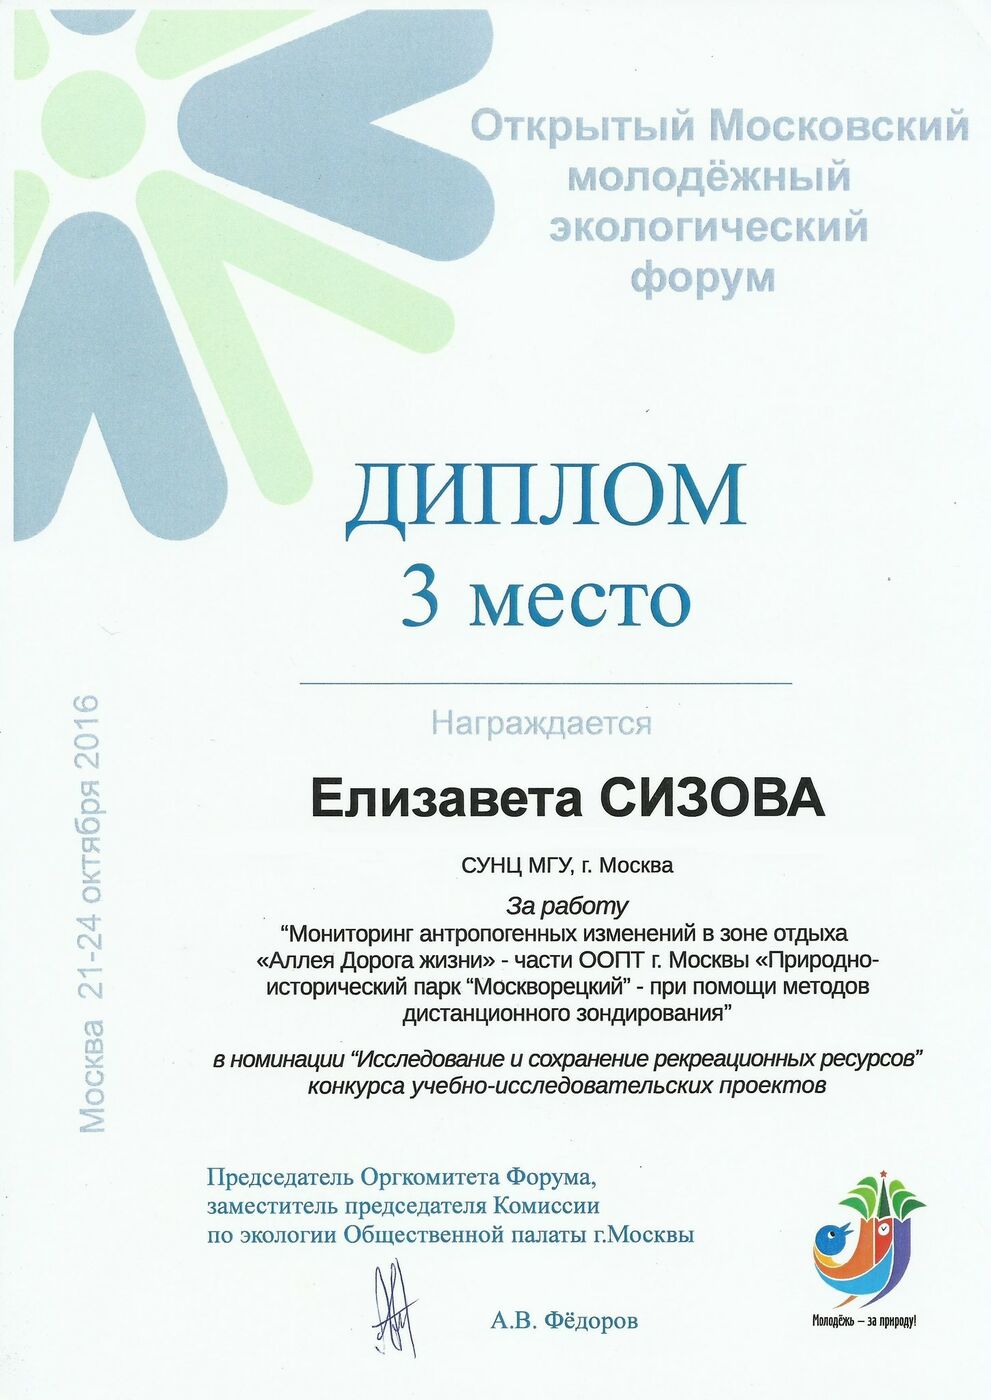 Открытый московский молодежный экологический форум